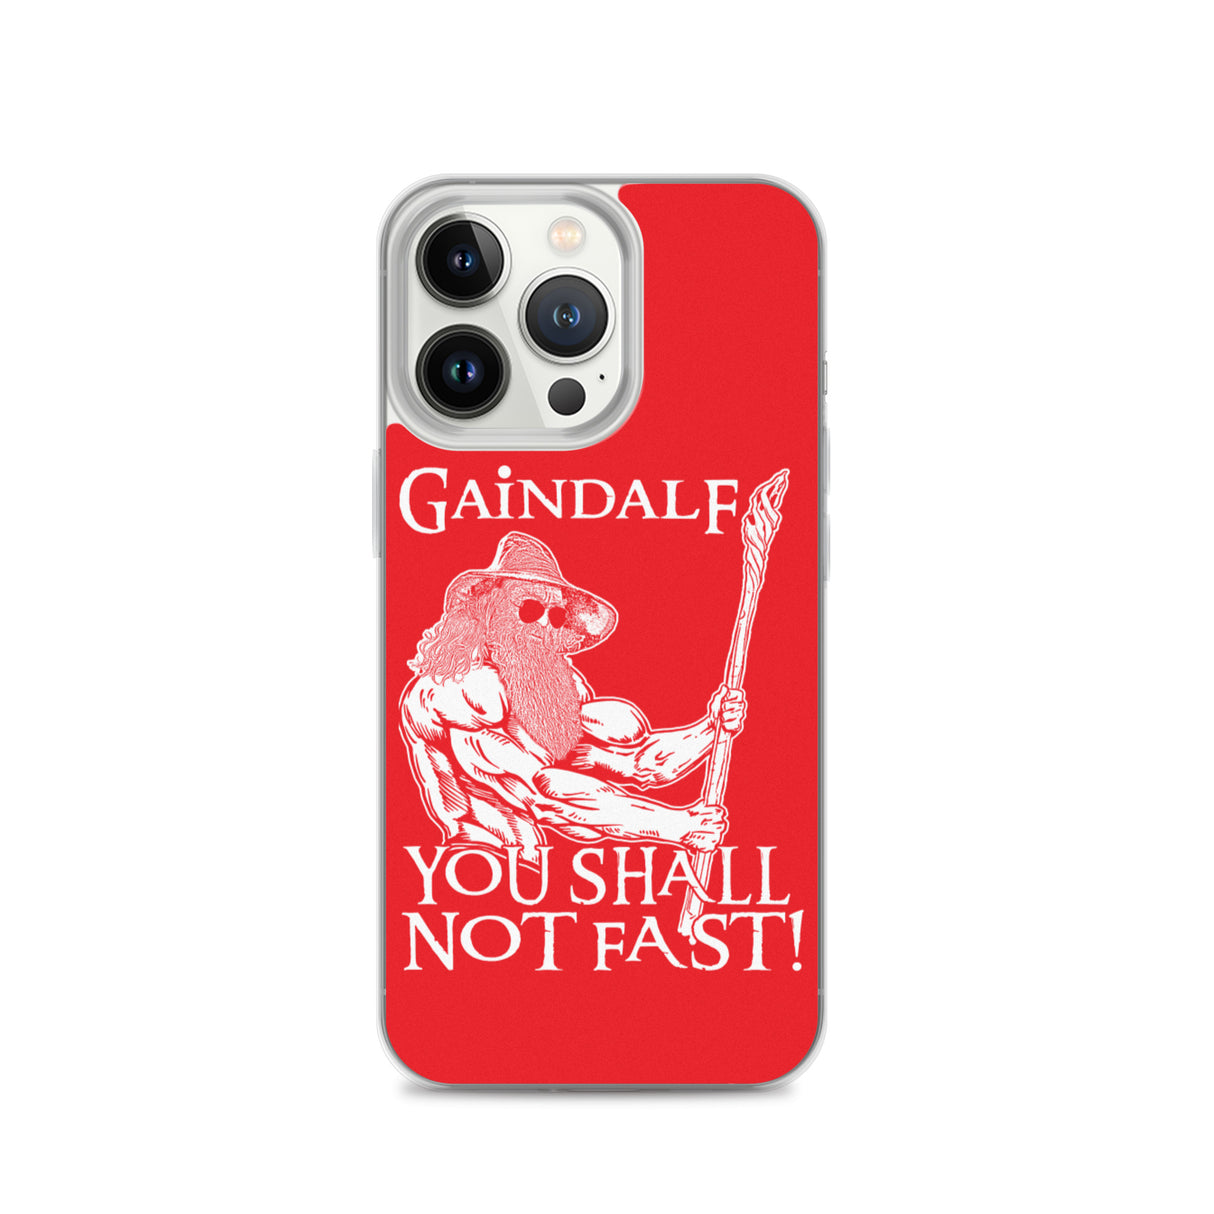 Gaindalf iPhone Case